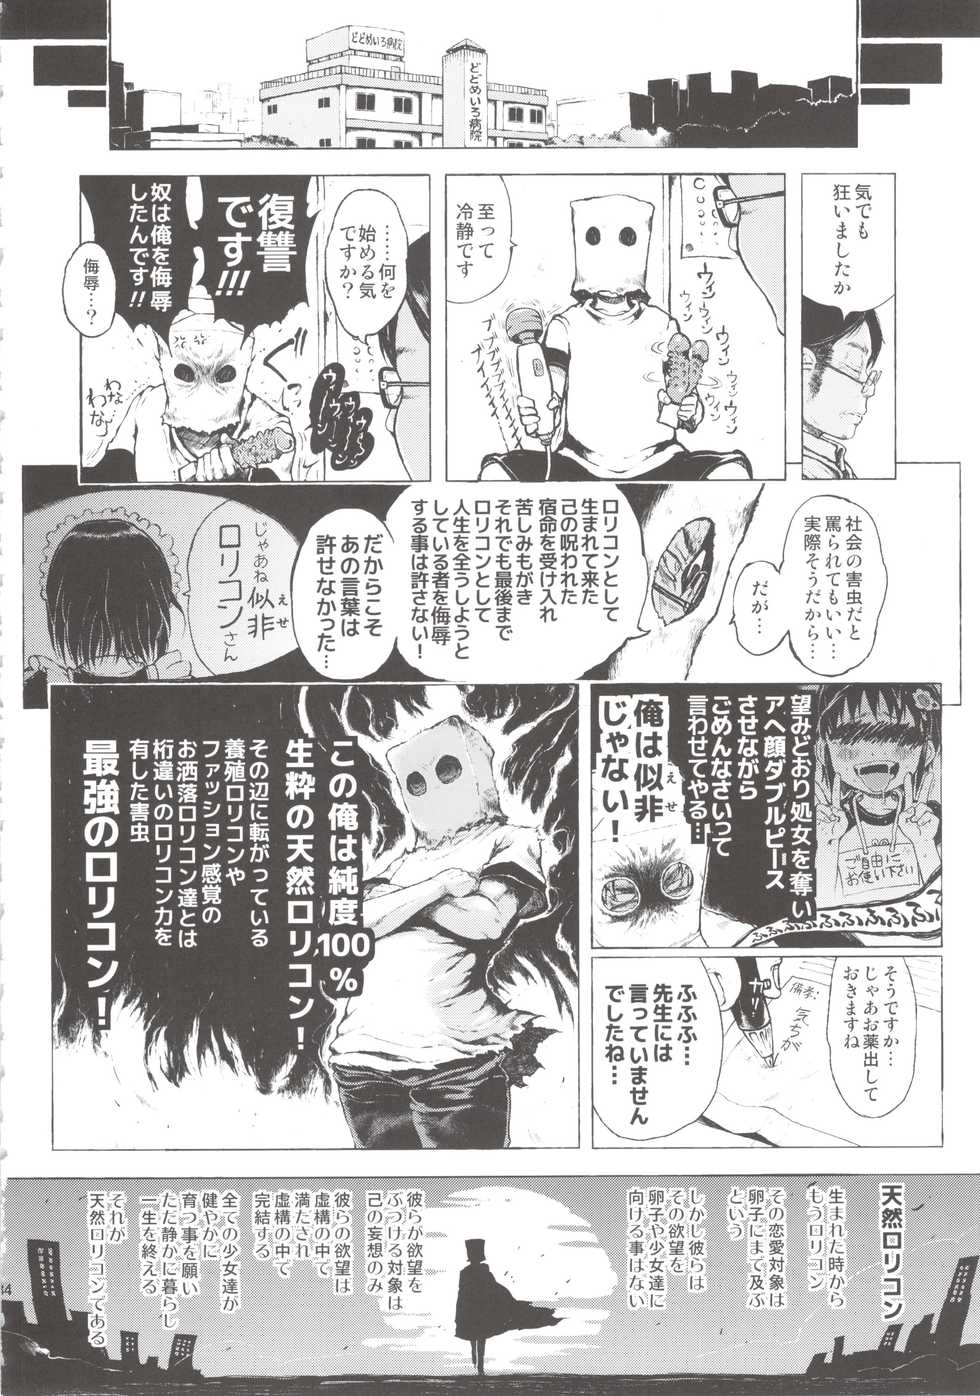 [Gomennasai] Anoko wa Toshi Densetsu. [2013-06-01] - Page 34